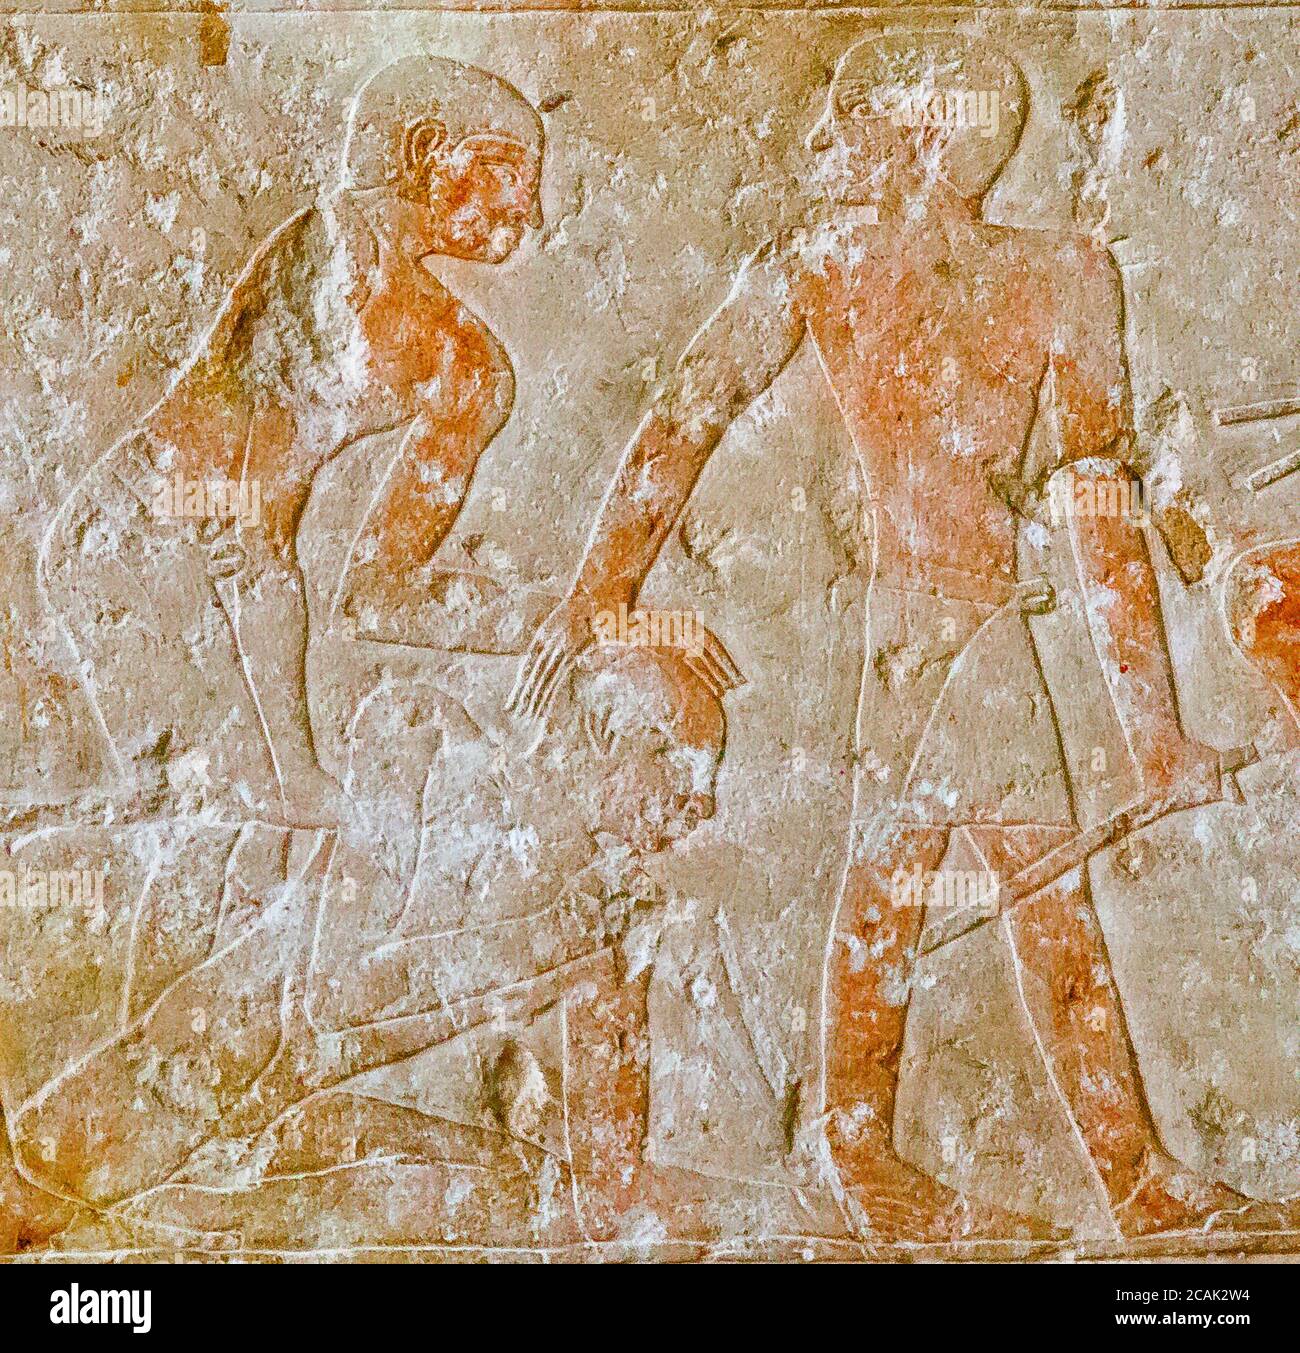 Le Caire, Musée égyptien, tombeau de Kaemrehu, Saqqara, détail d'un relief représentant des scènes agricoles : UN homme est présenté à des scribes et peut-être battu. Banque D'Images